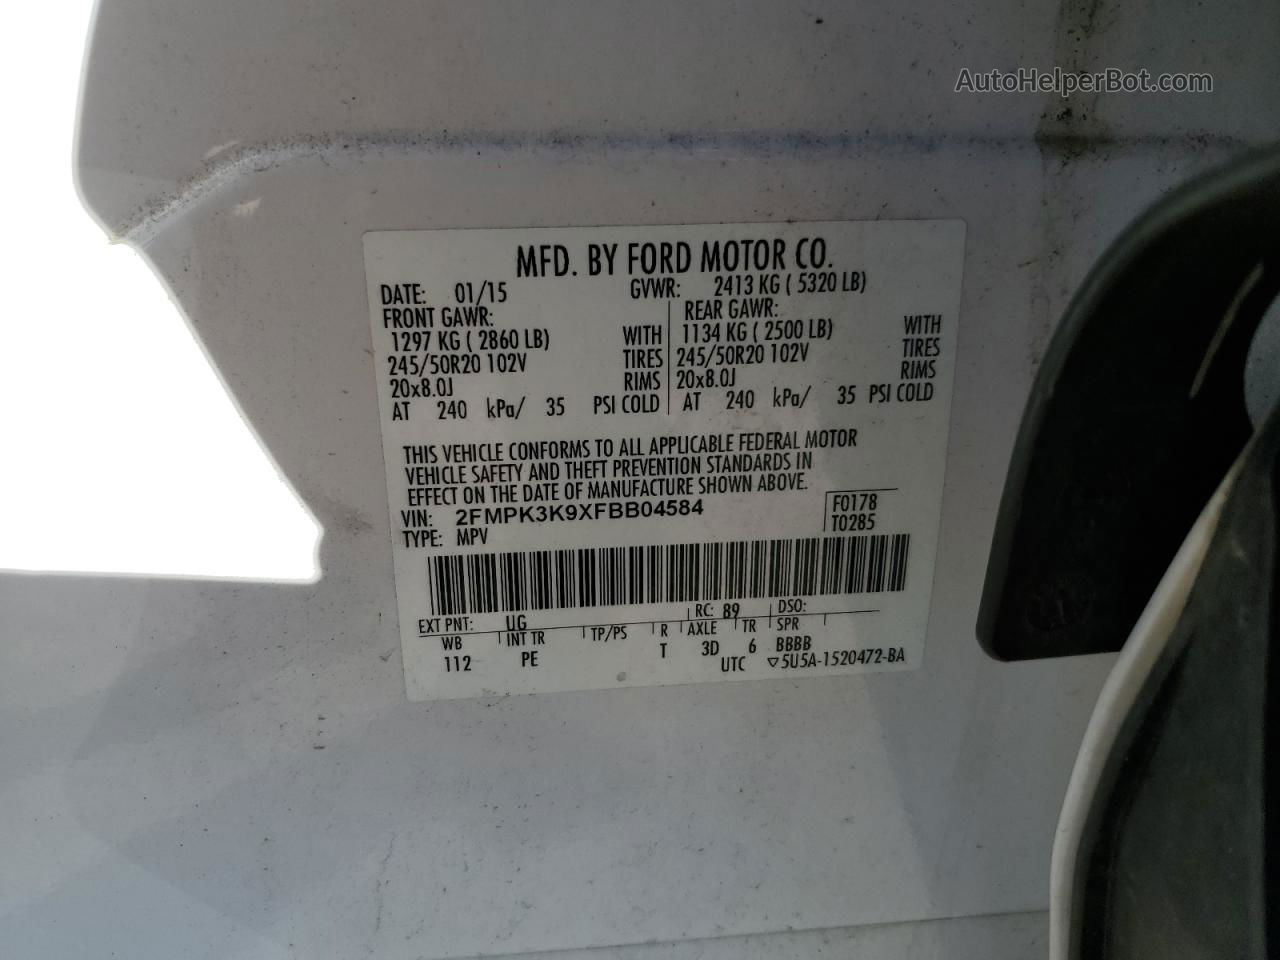 2015 Ford Edge Titanium White vin: 2FMPK3K9XFBB04584